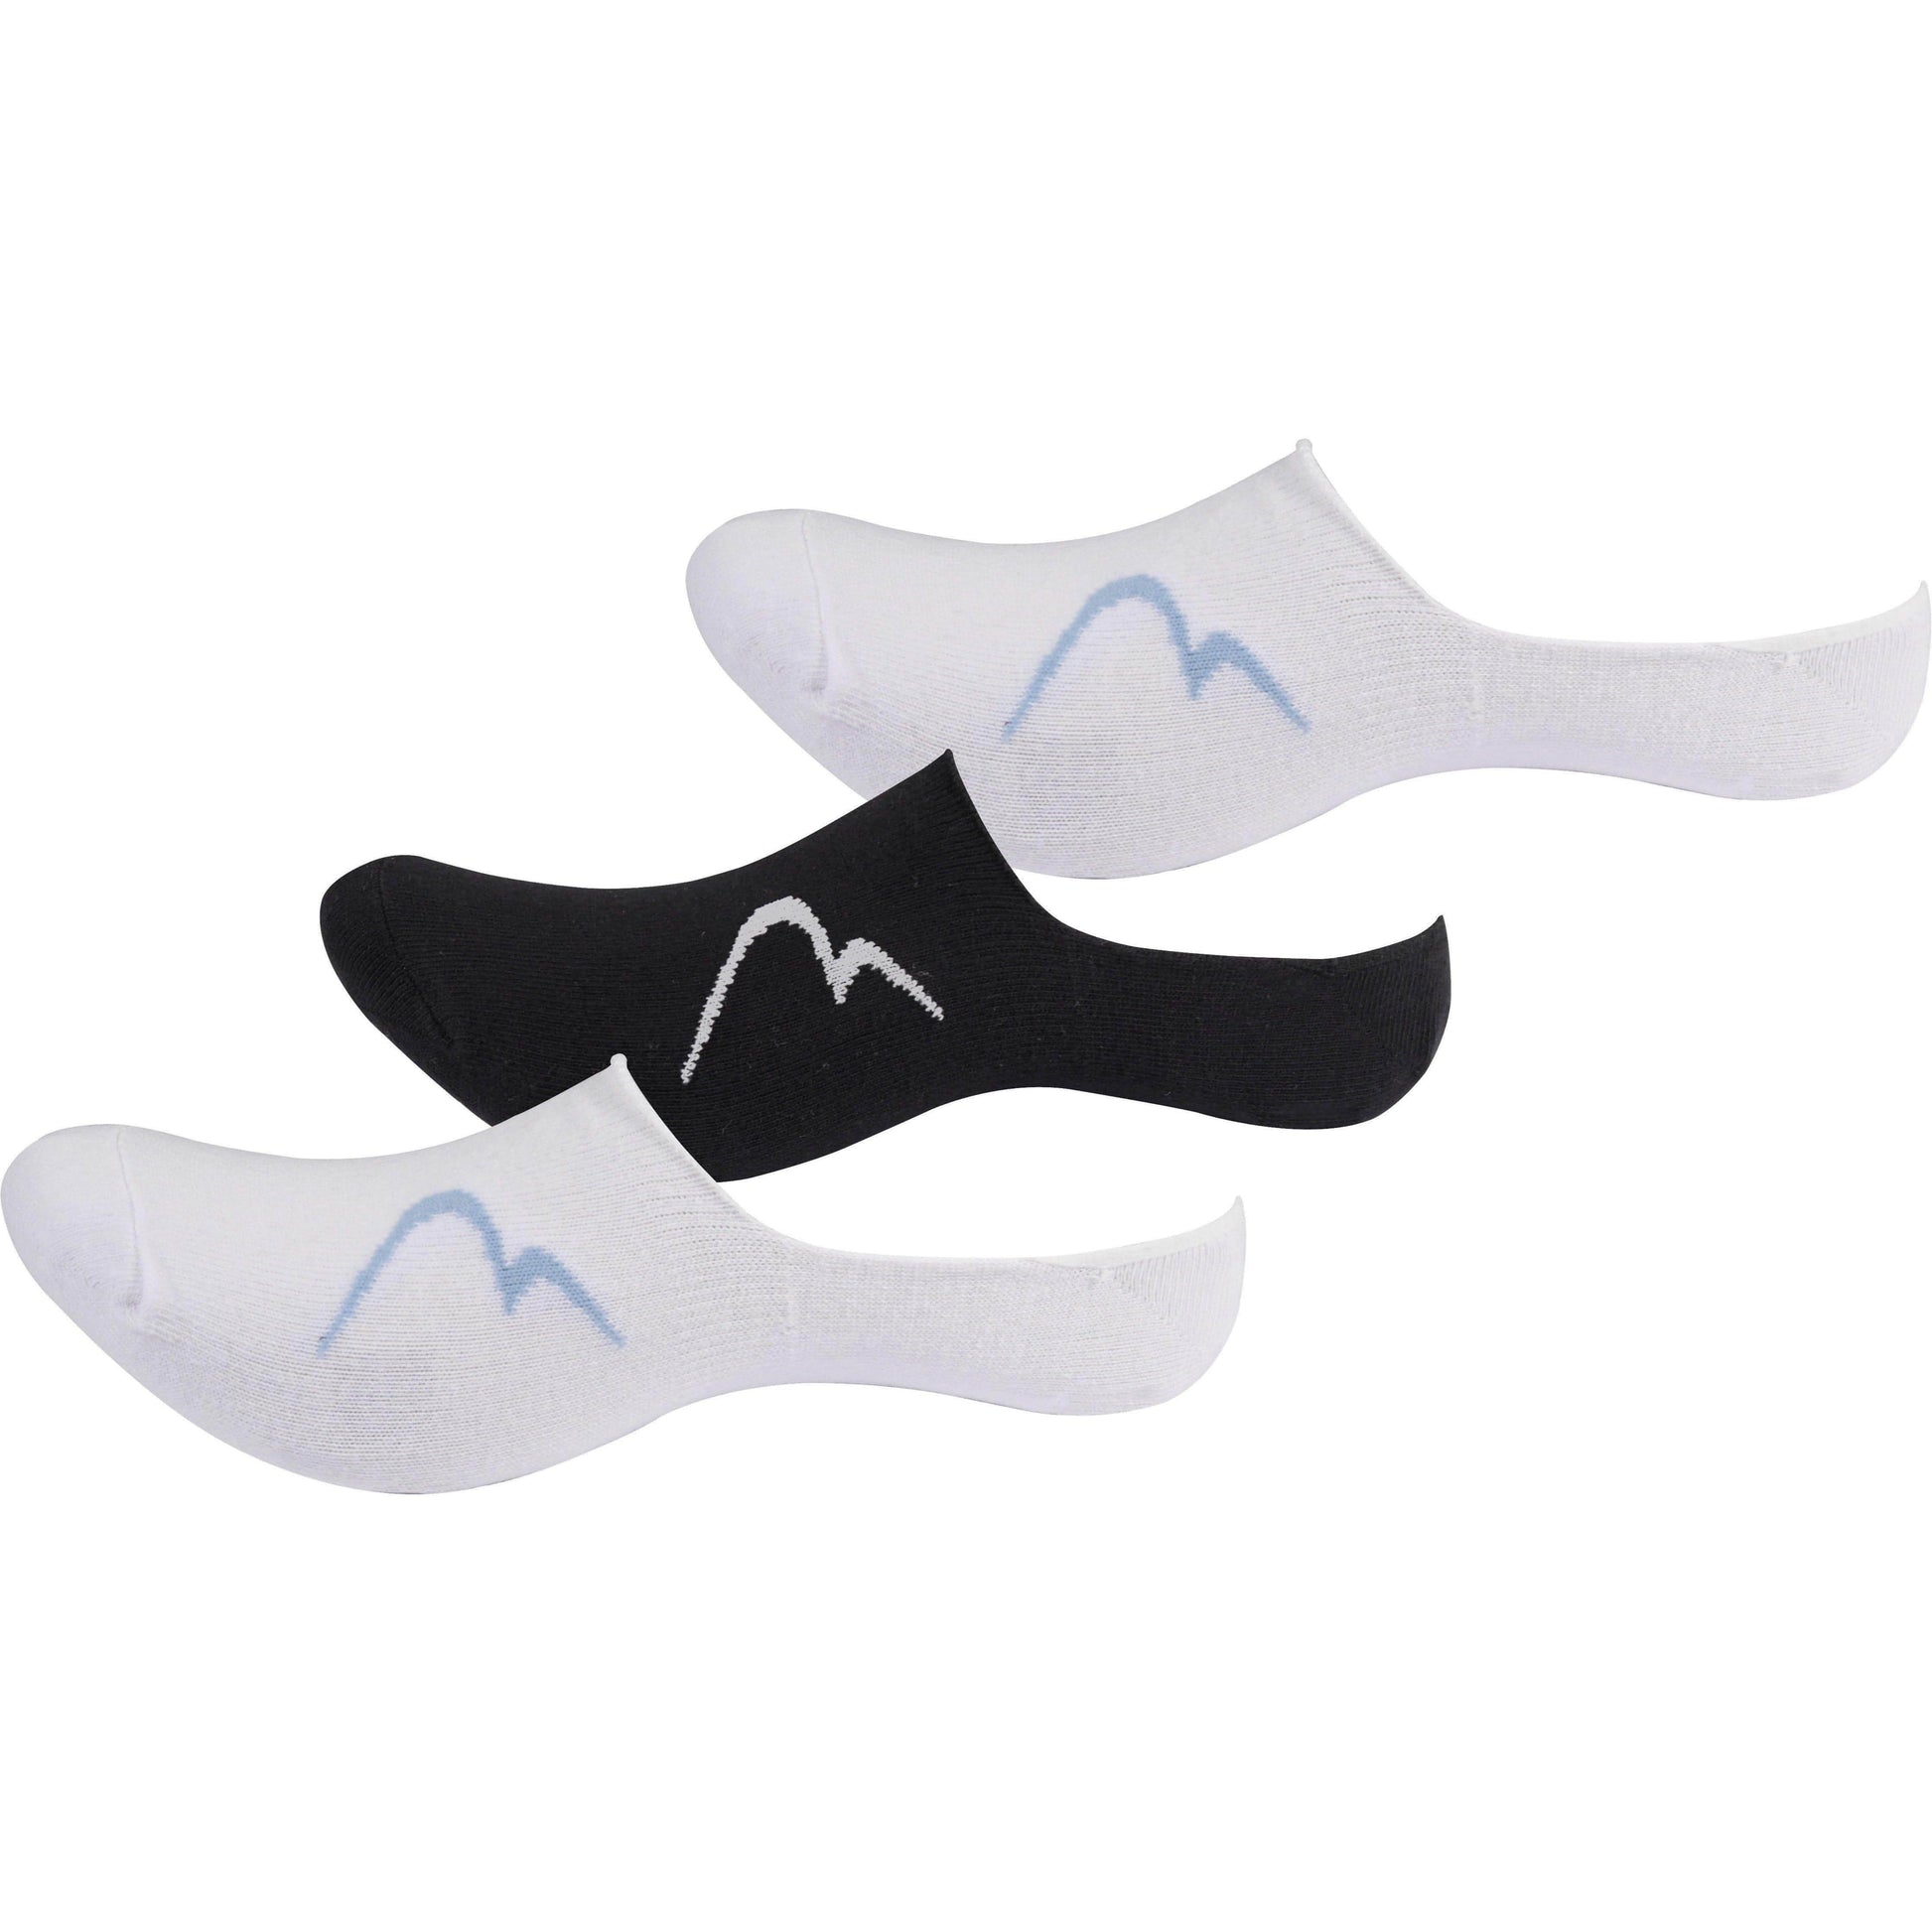 More Mile Idaho Trainer Liner Socks (3 Pack) - Multi 5055604343898 - Start Fitness